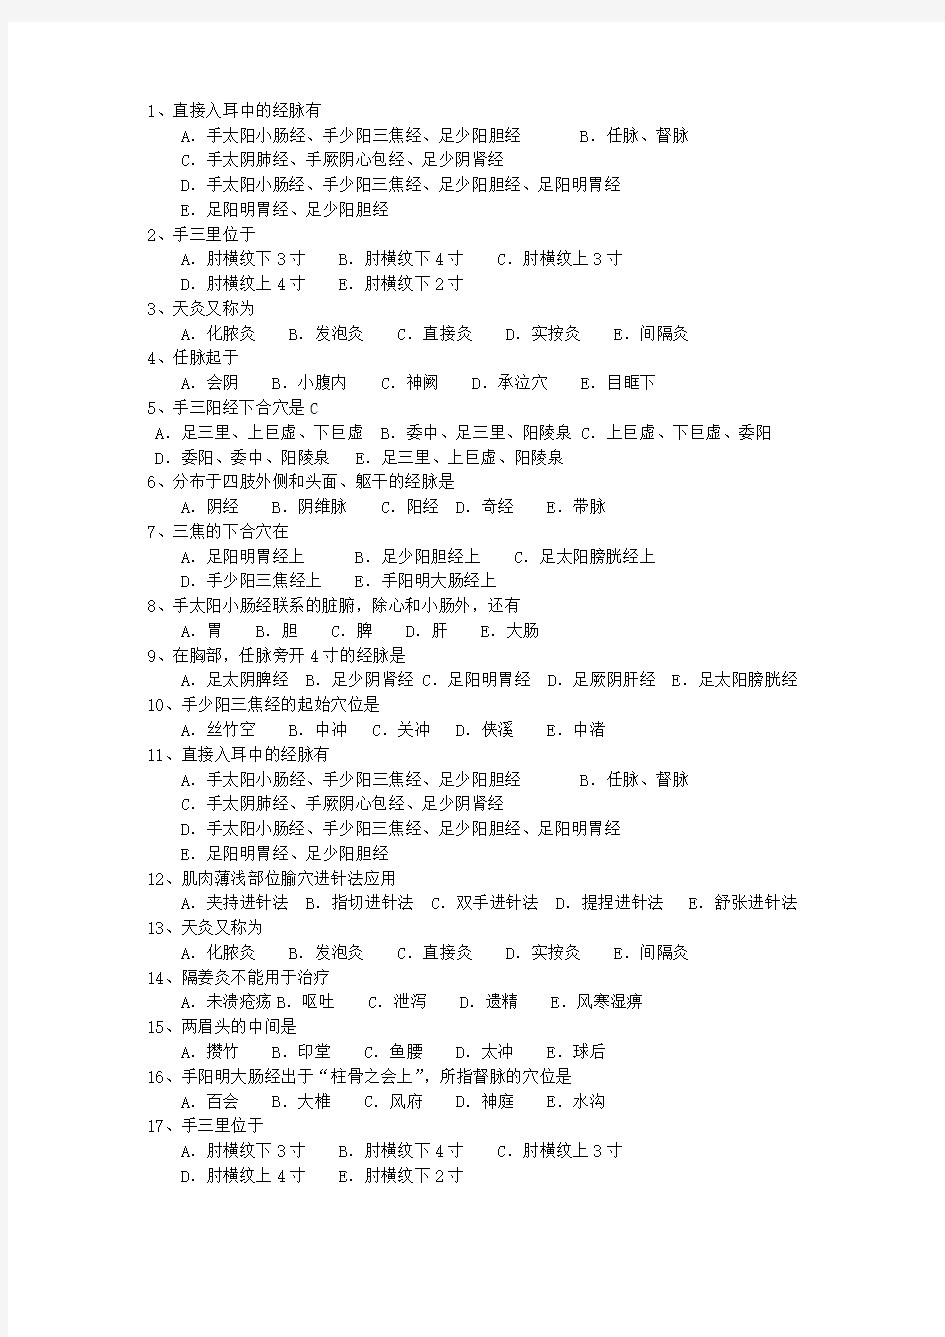 2013年浙江省针灸护理最新考试试题库(完整版)